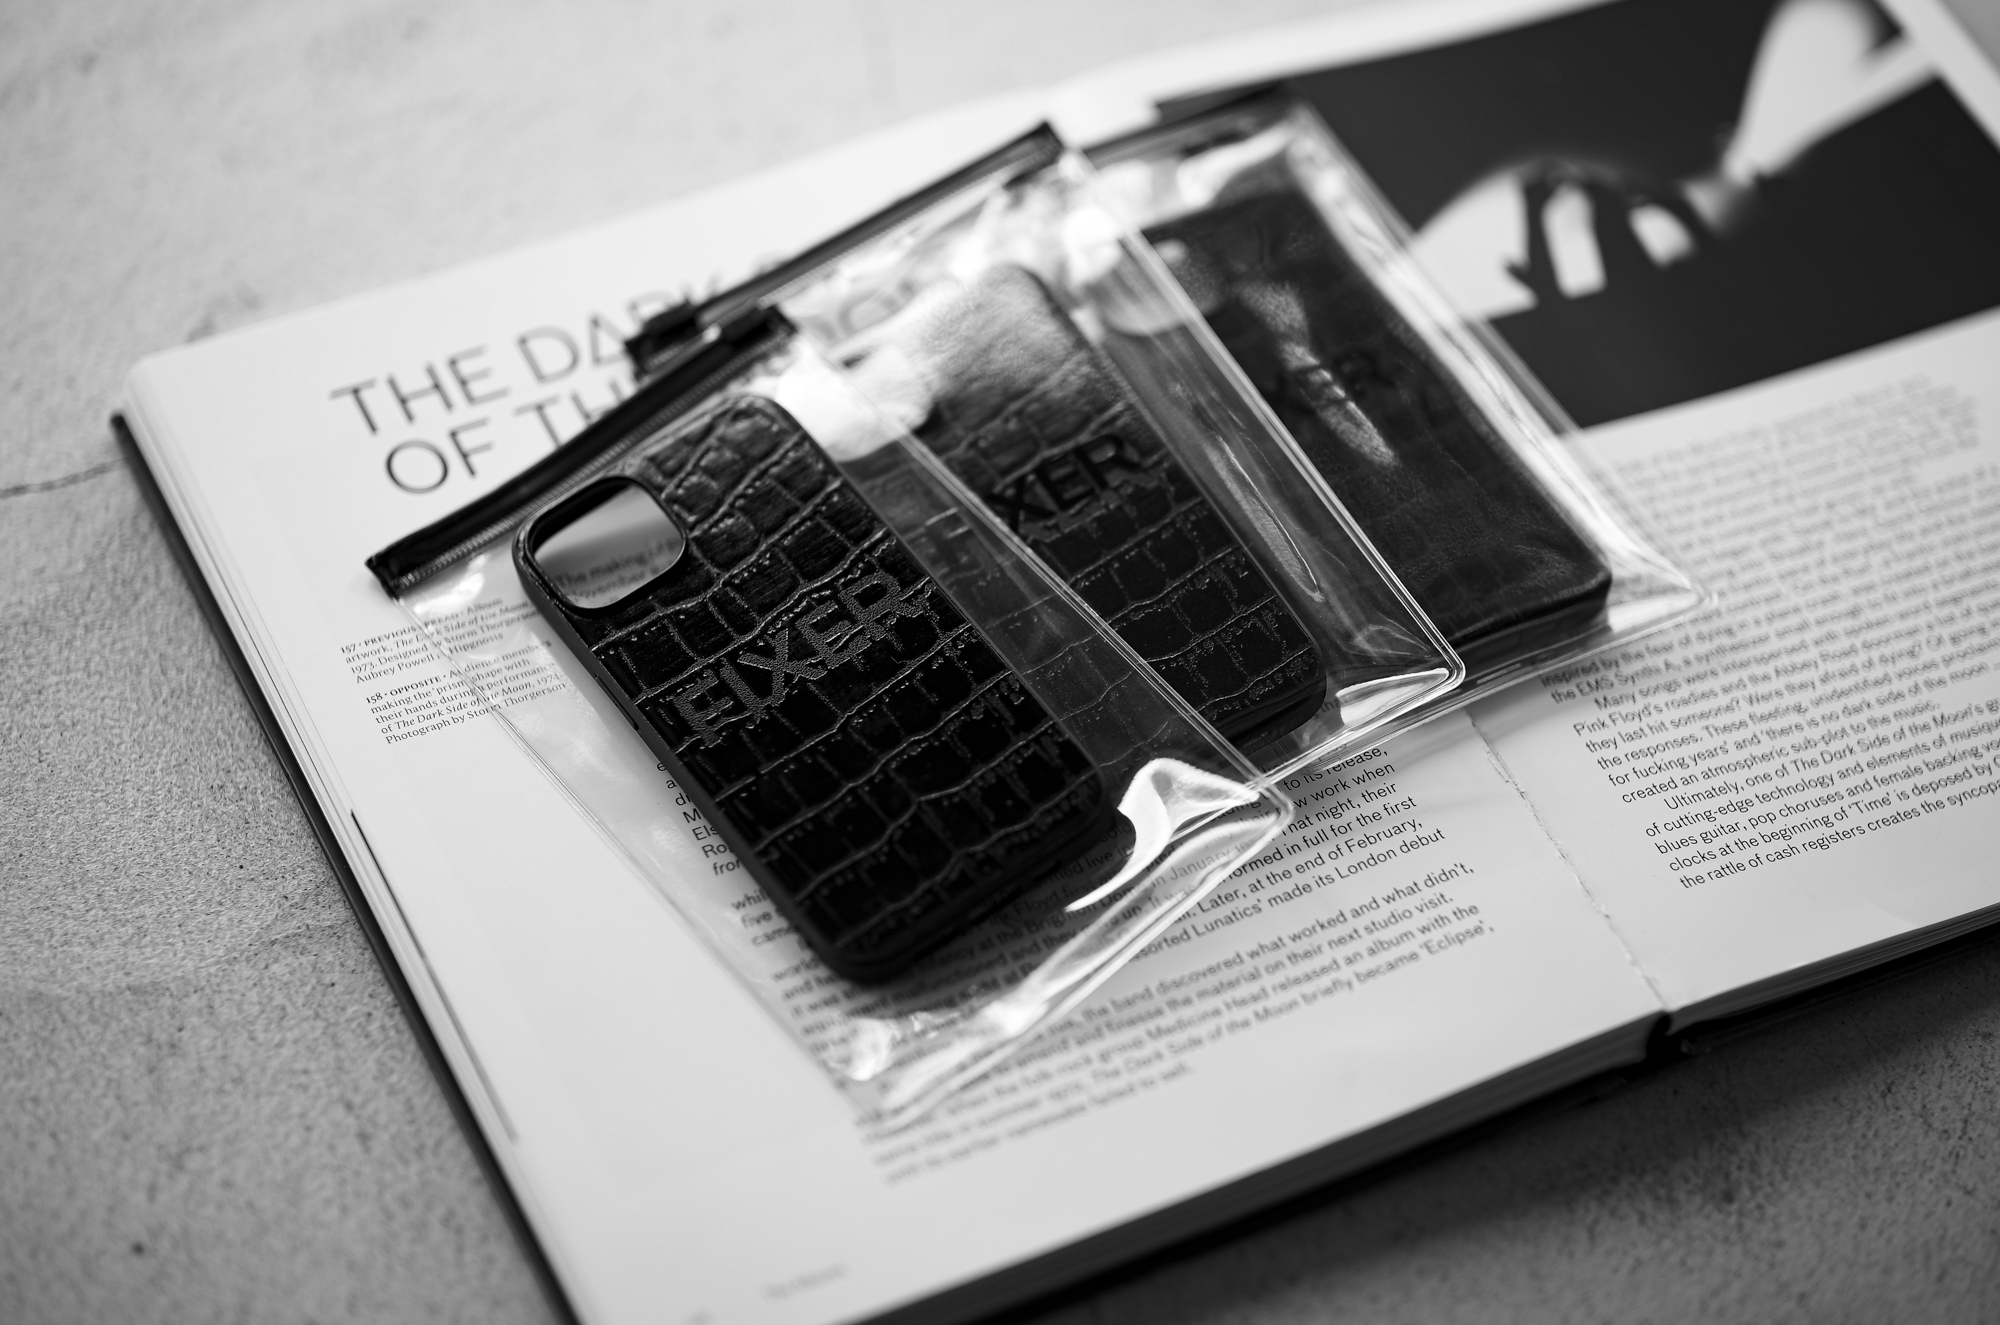 FIXER "iPhone 14 Crocodile Case" ALL BLACK フィクサー アイフォンケース 携帯ケース ノーマルケース クロコダイルケース ブラック ブラック ホワイト オールブラック 愛知 名古屋 Alto e Diritto altoediritto アルトエデリット